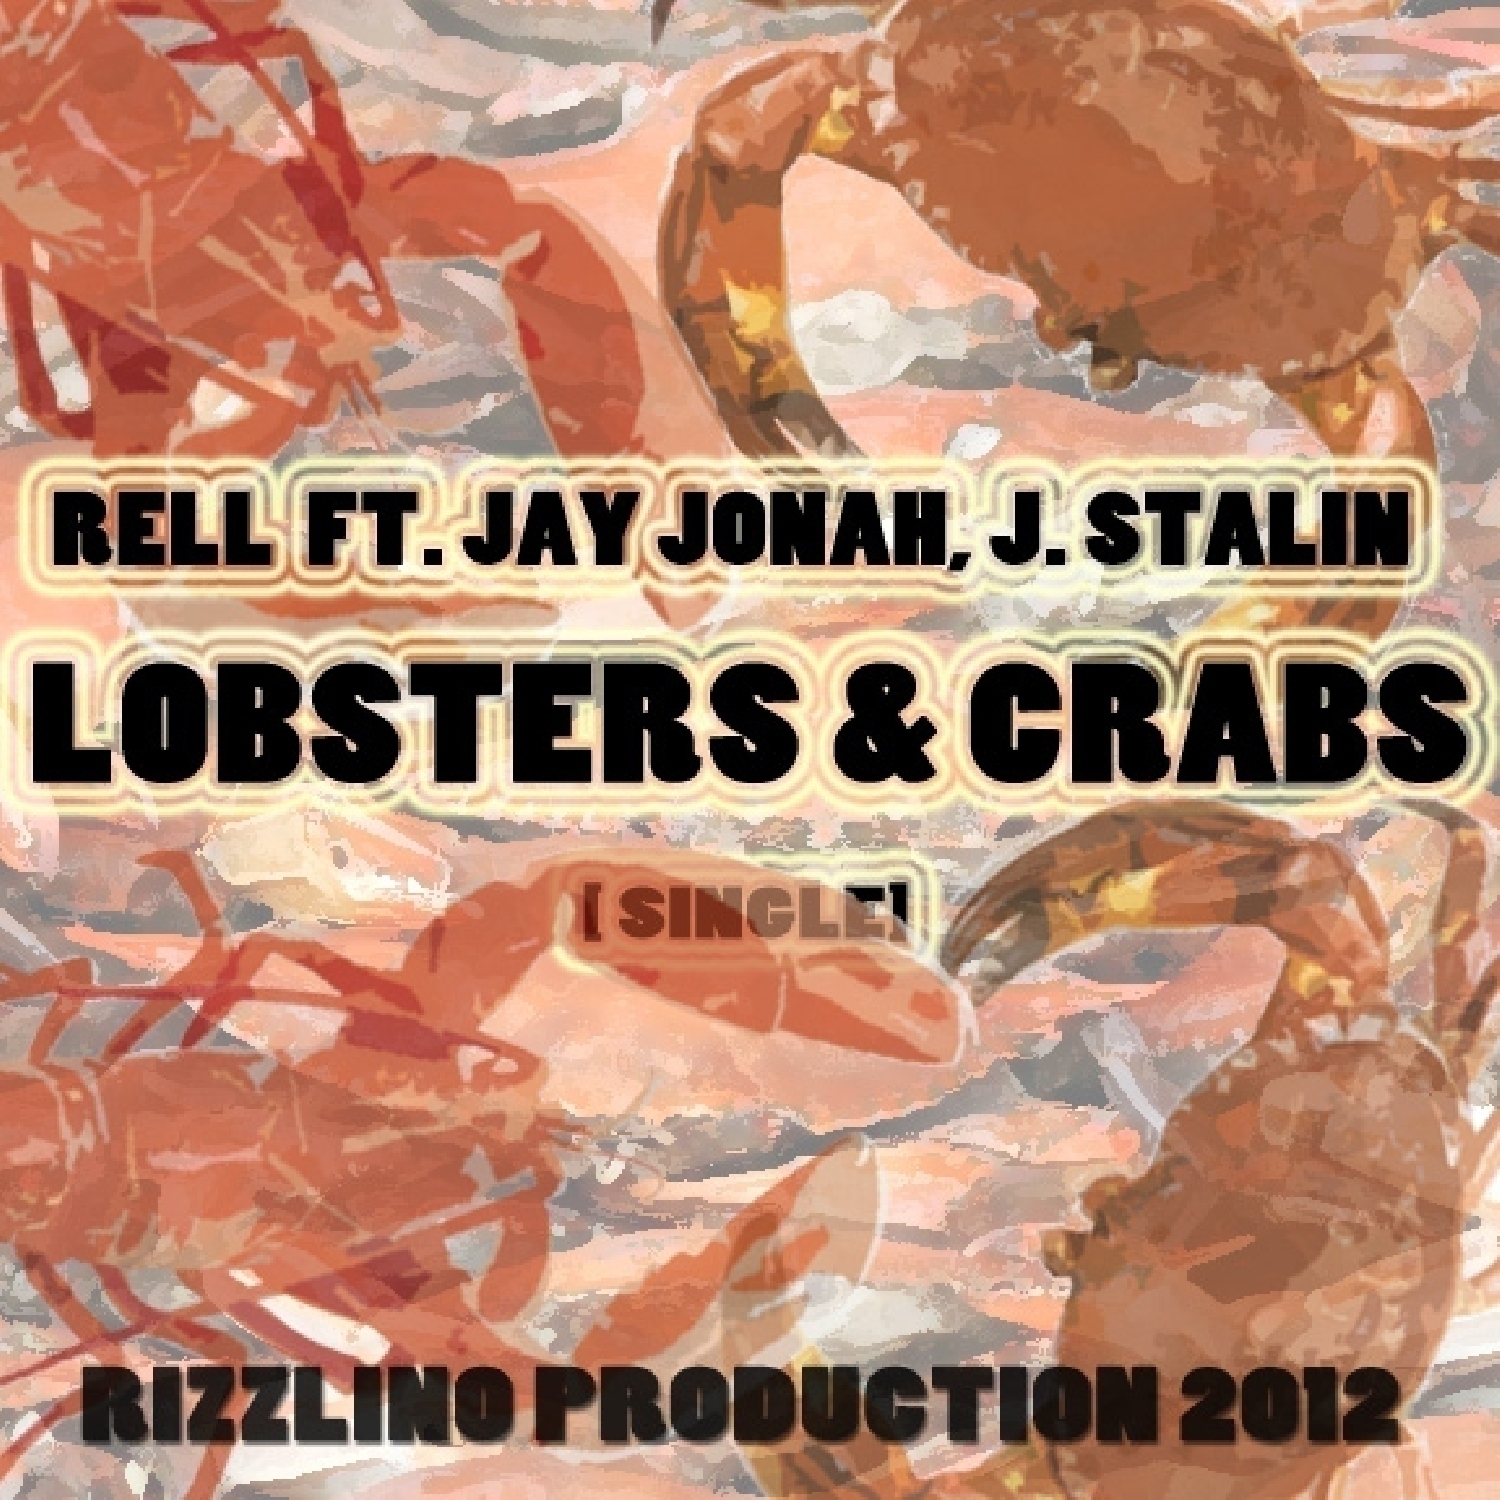 Lobsters & Crabs (feat. J. Stalin & Jay Jonah) - Single